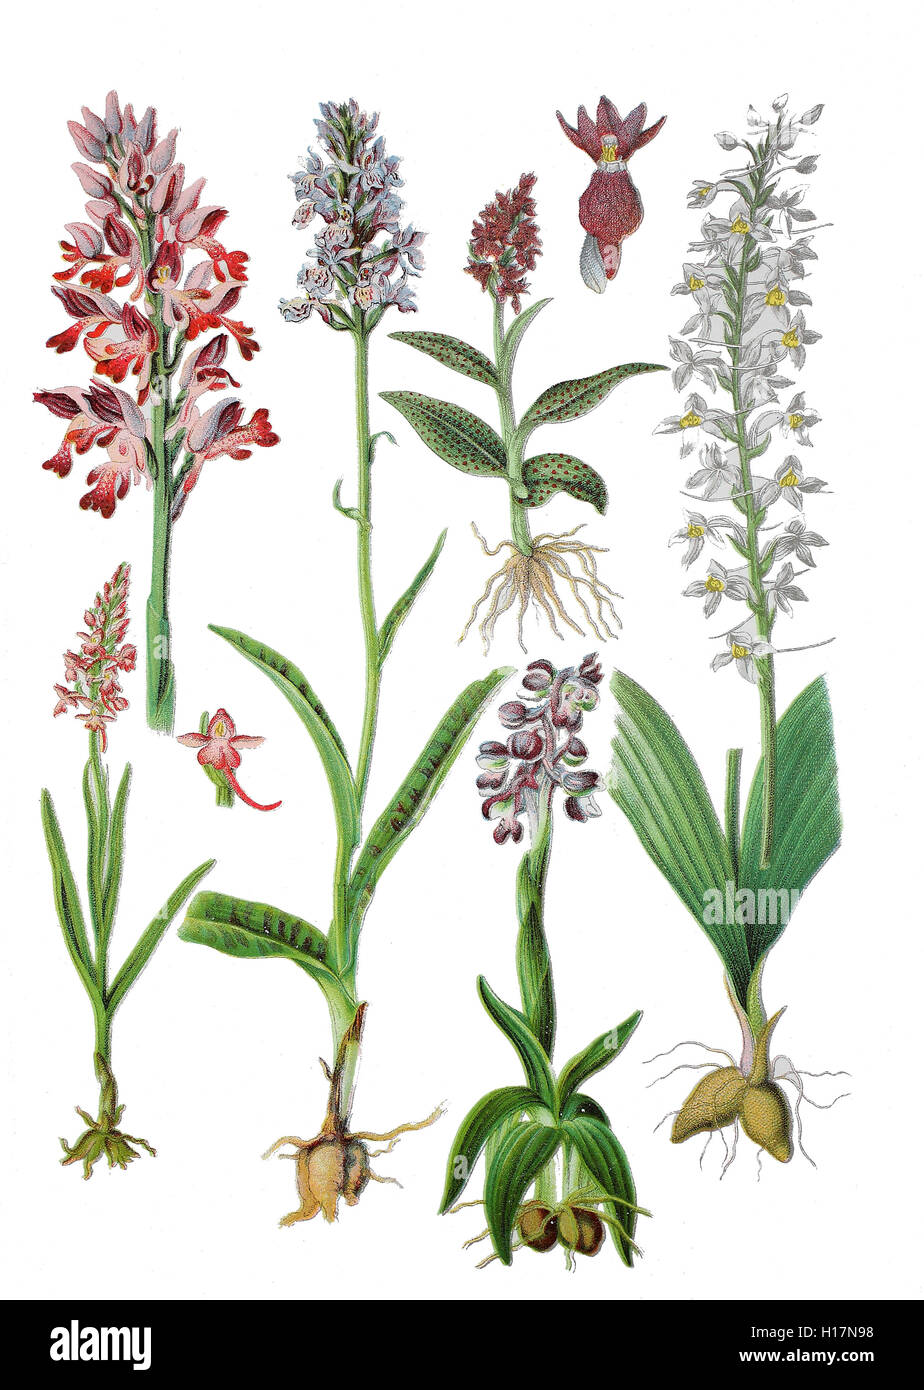 Helm-Knabenkraut, Orchis militaris (oben links), Breitblaettriges Knabenkraut oder Breitblaettriger Fingerwurz, Dactylorhiza majalis (oben, 2. von rechts),  Kleines Knabenkraut, Salep-Knabenkraut oder Narrenkappe, Orchis morio (unten, Geflecktes Knabenkraut oder Flecken-Fingerwurz, Dactylorhiza maculata (unten, 2, von links), Muecken-Haendelwurz, Langsporn-Haendelwurz, Fliegen-Haendelwurz oder Grosse Haendelwurz, Gymnadenia conopsea, (unten links), Zweiblaettrige Waldhyazinthe, Weiss-Waldhyazinthe oder Weisse Waldhyazinthe, Platanthera bifolia (unten rechts) Stock Photo